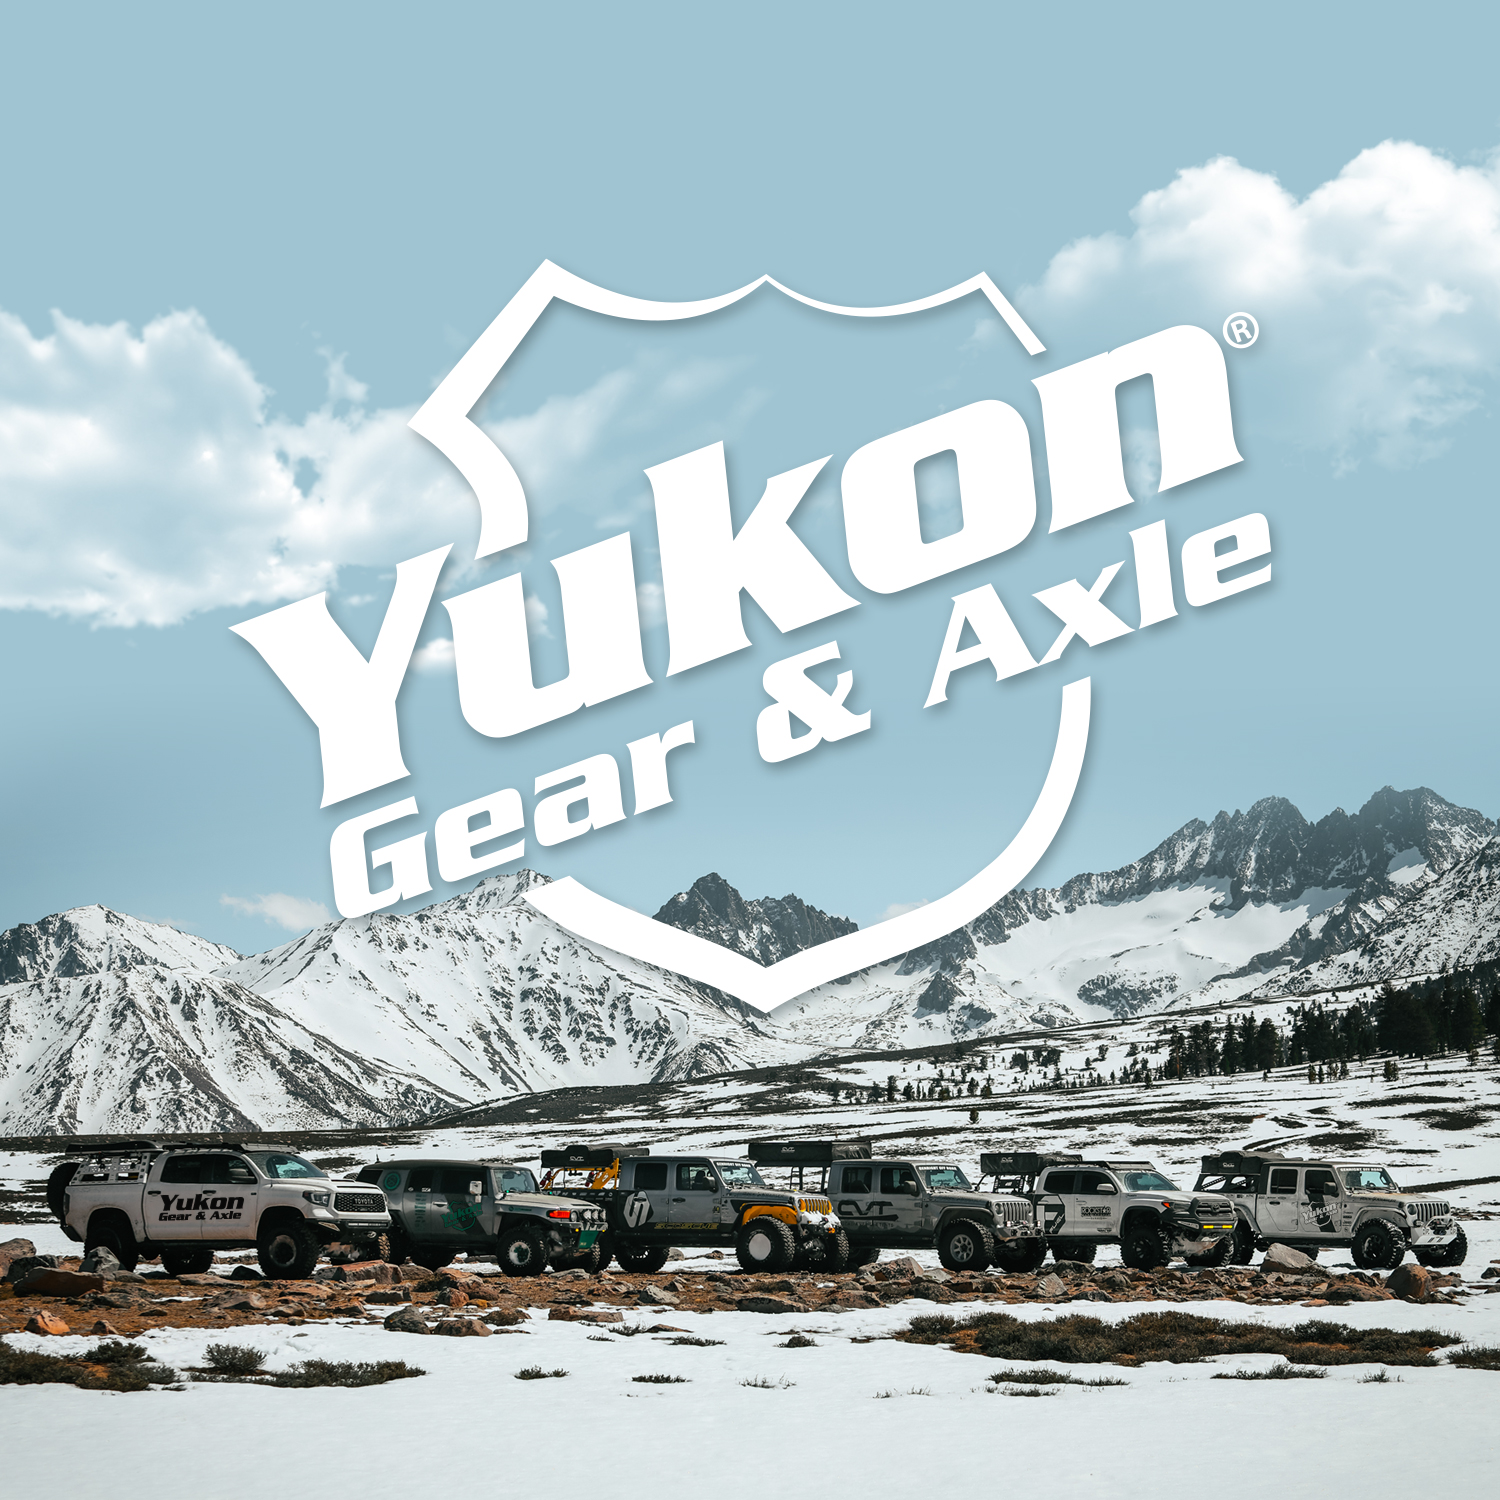 Yukon steel spool for Toyota 8" 4 cylinder 